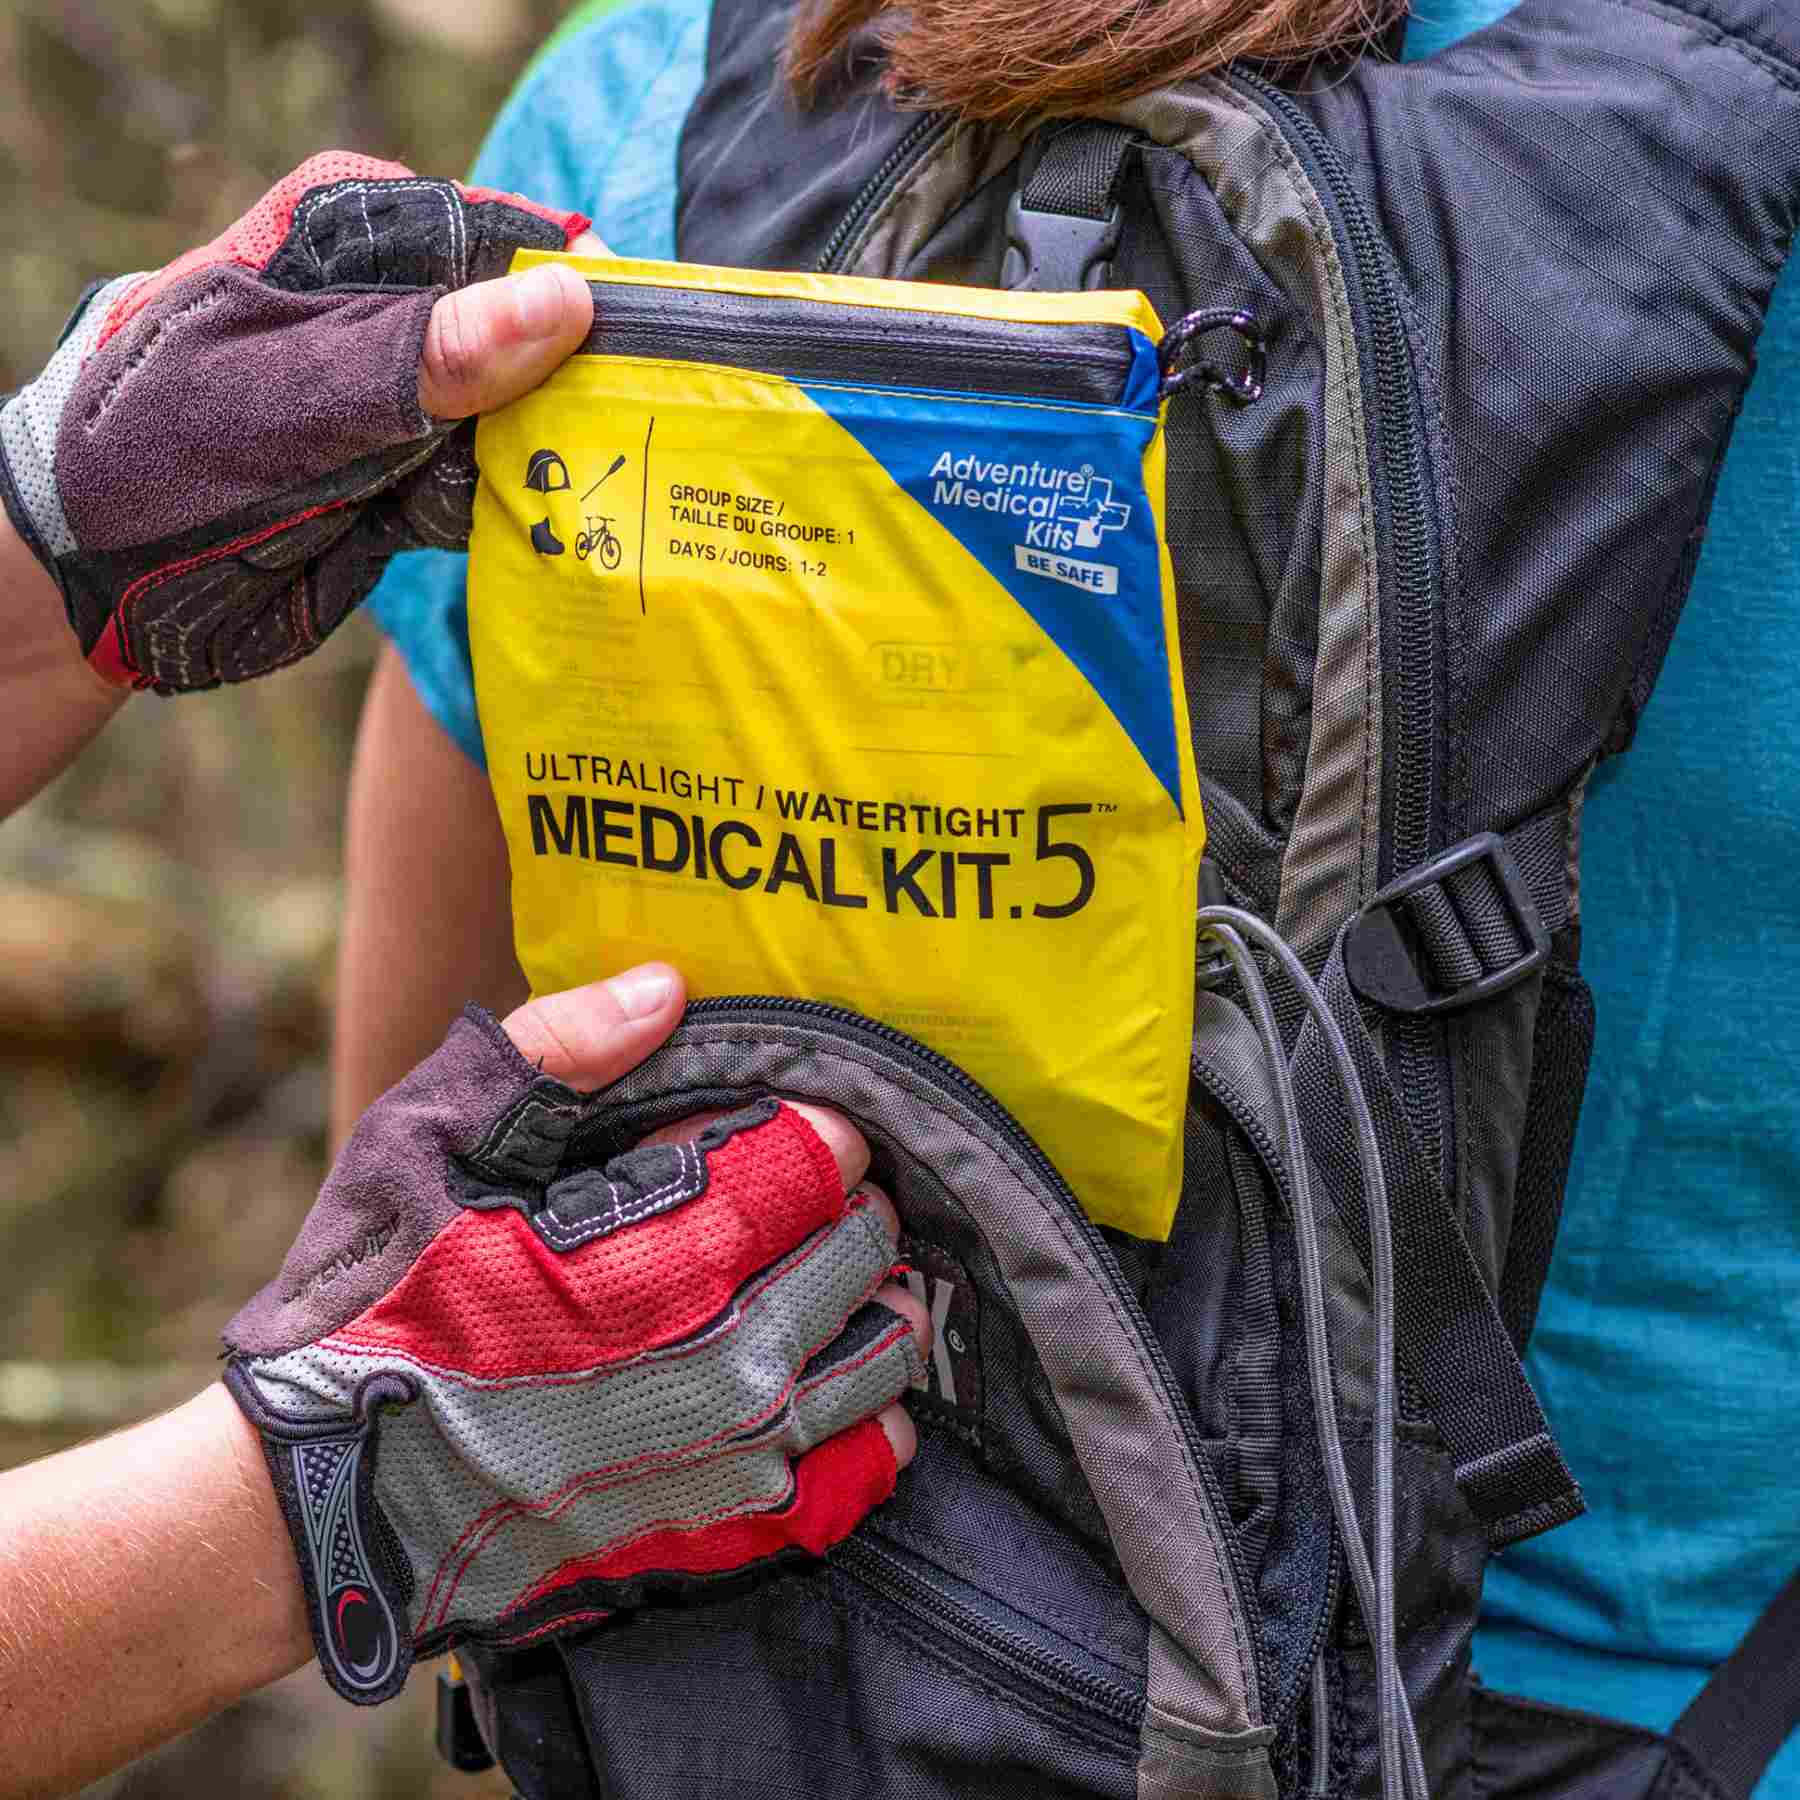 Ultralight/Watertight Medical Kit - .5 removing kit from biker's backpack